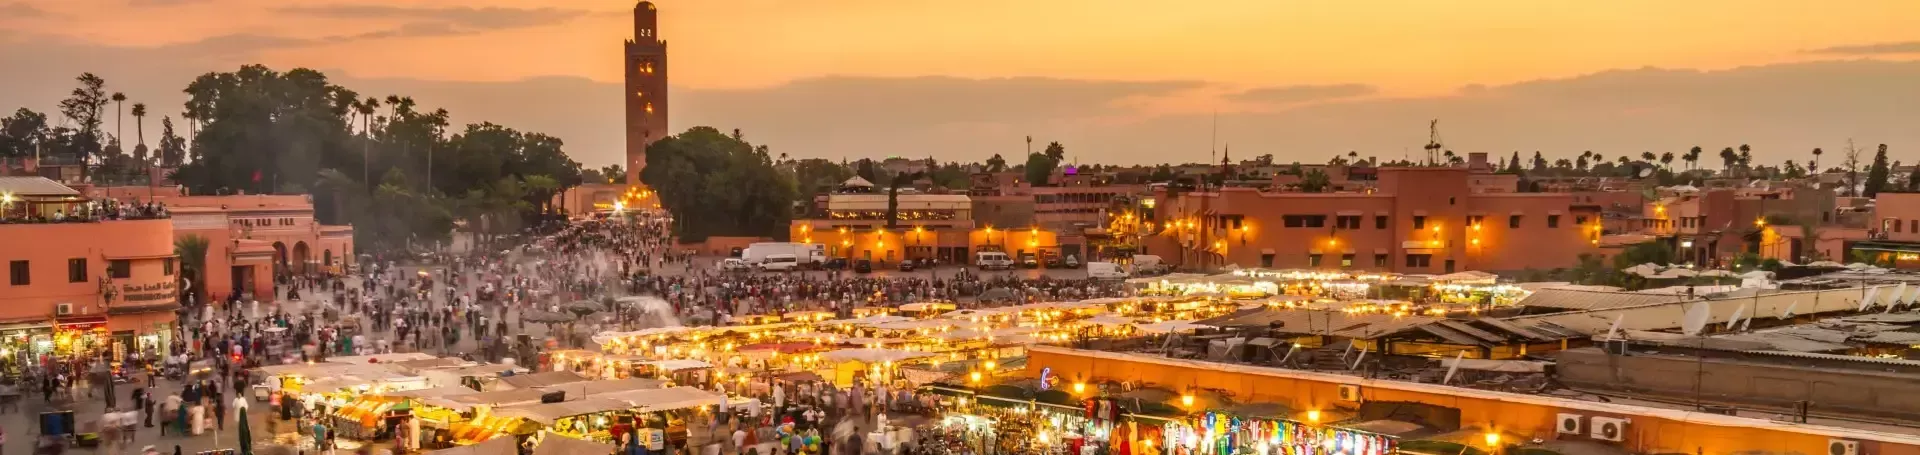 Marokko_Marrakech